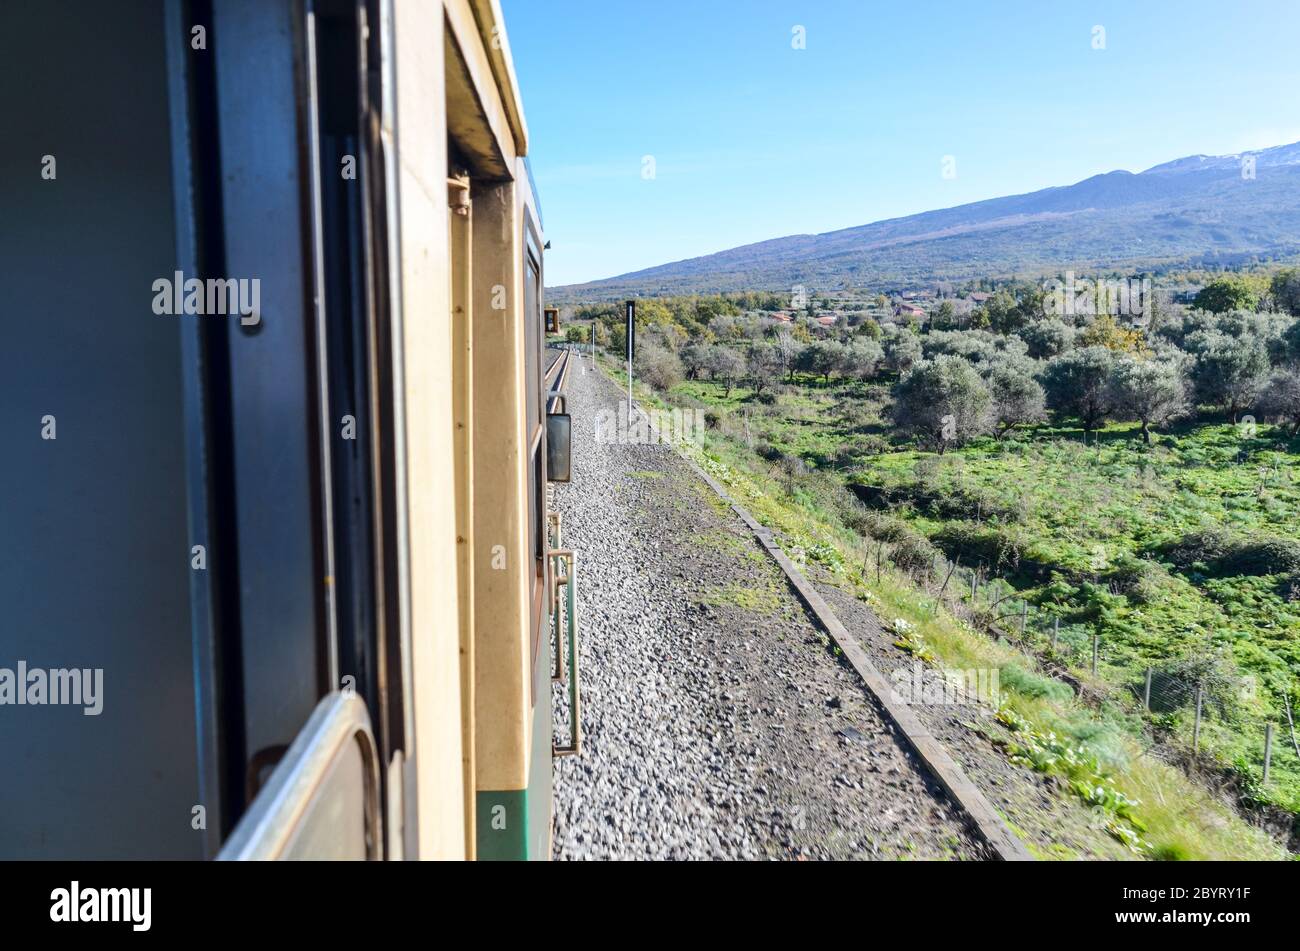 Ferrovia Circumetnea, ligne de train autour de l'Etna, Sicile, Italie Banque D'Images